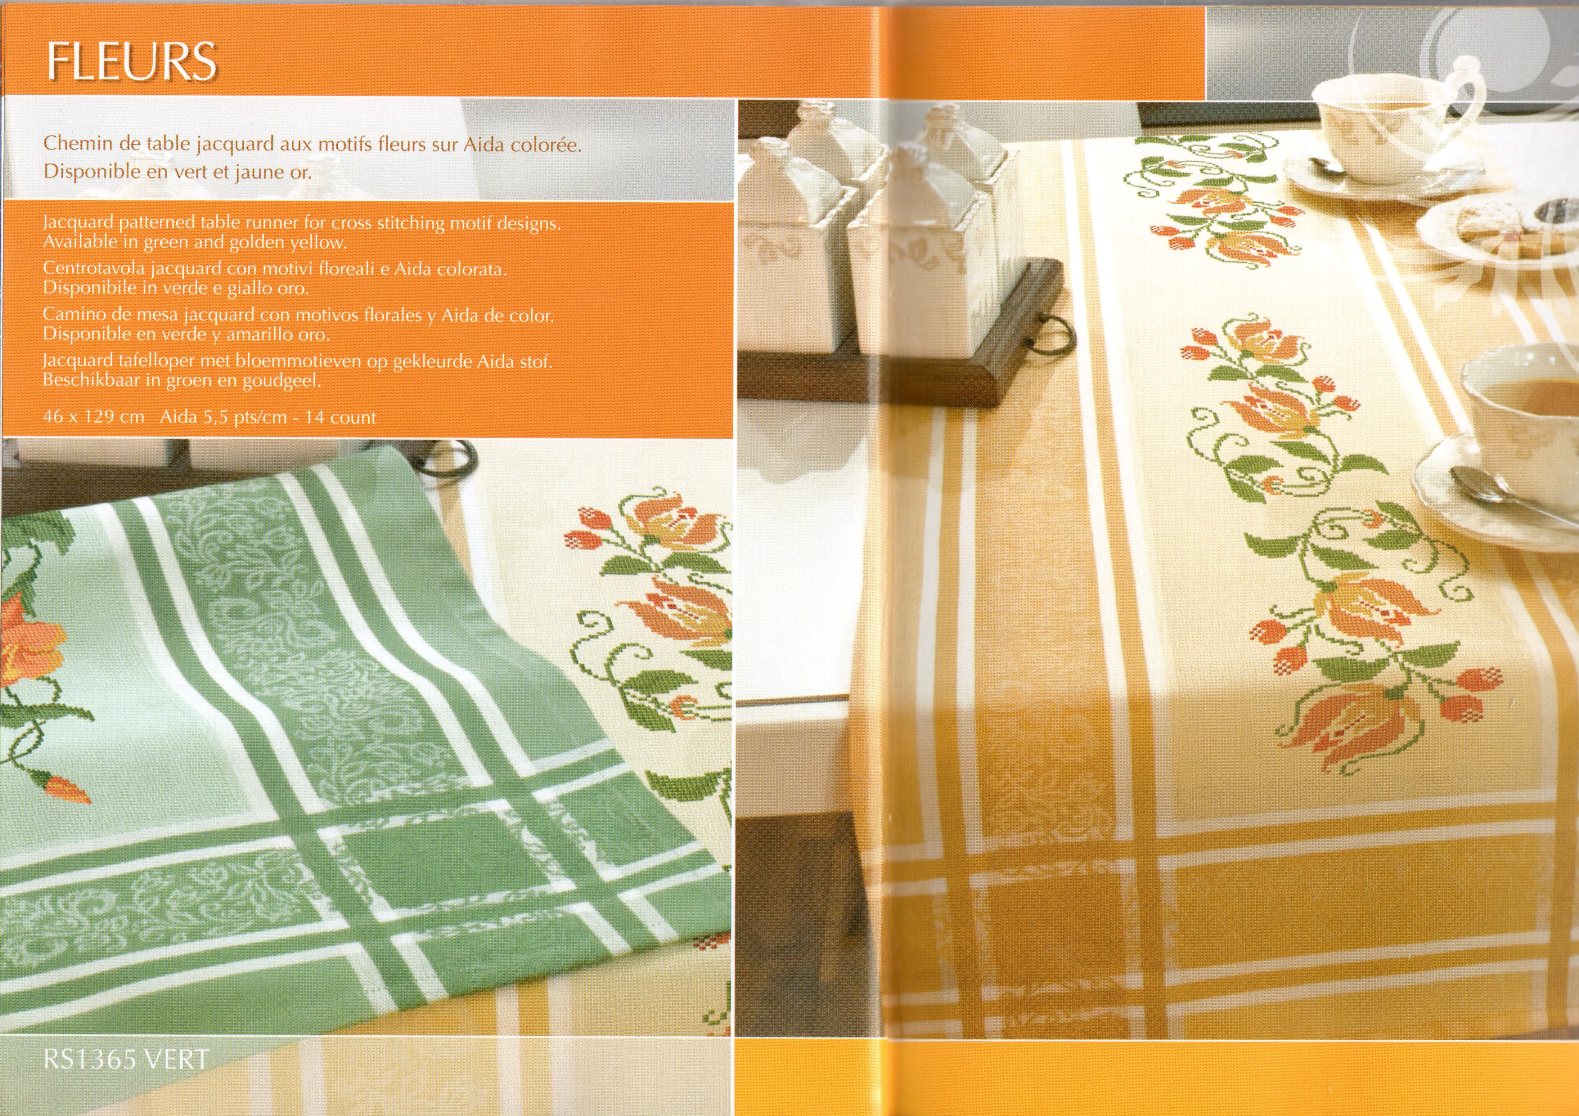 cross stitch tablecloth orange stylized flowers (1)